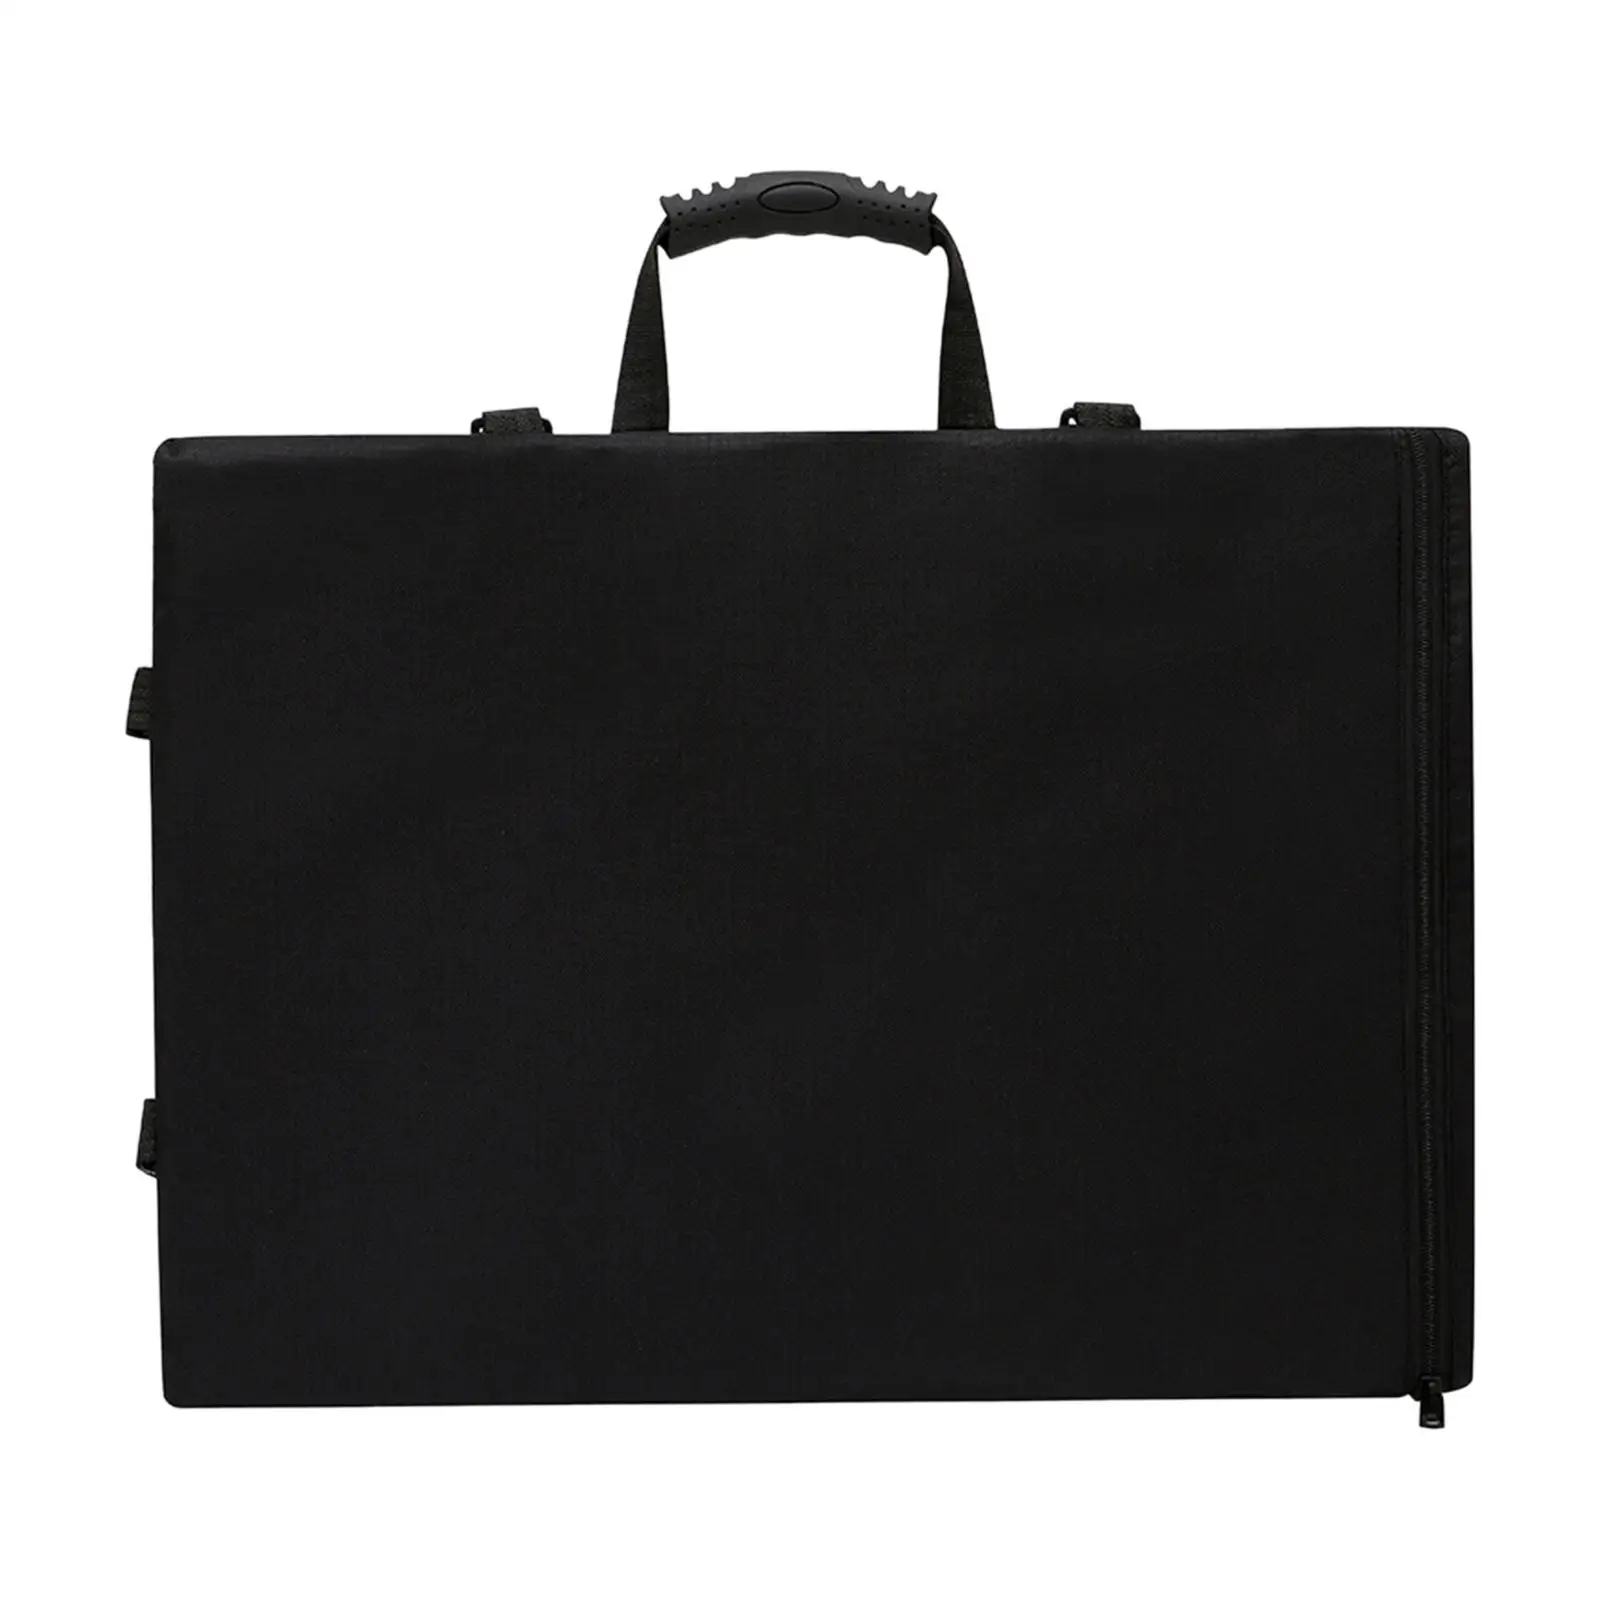 Art Portfolio Case Portfolio Backpack Art Portfolio Carry Bag for Artwork